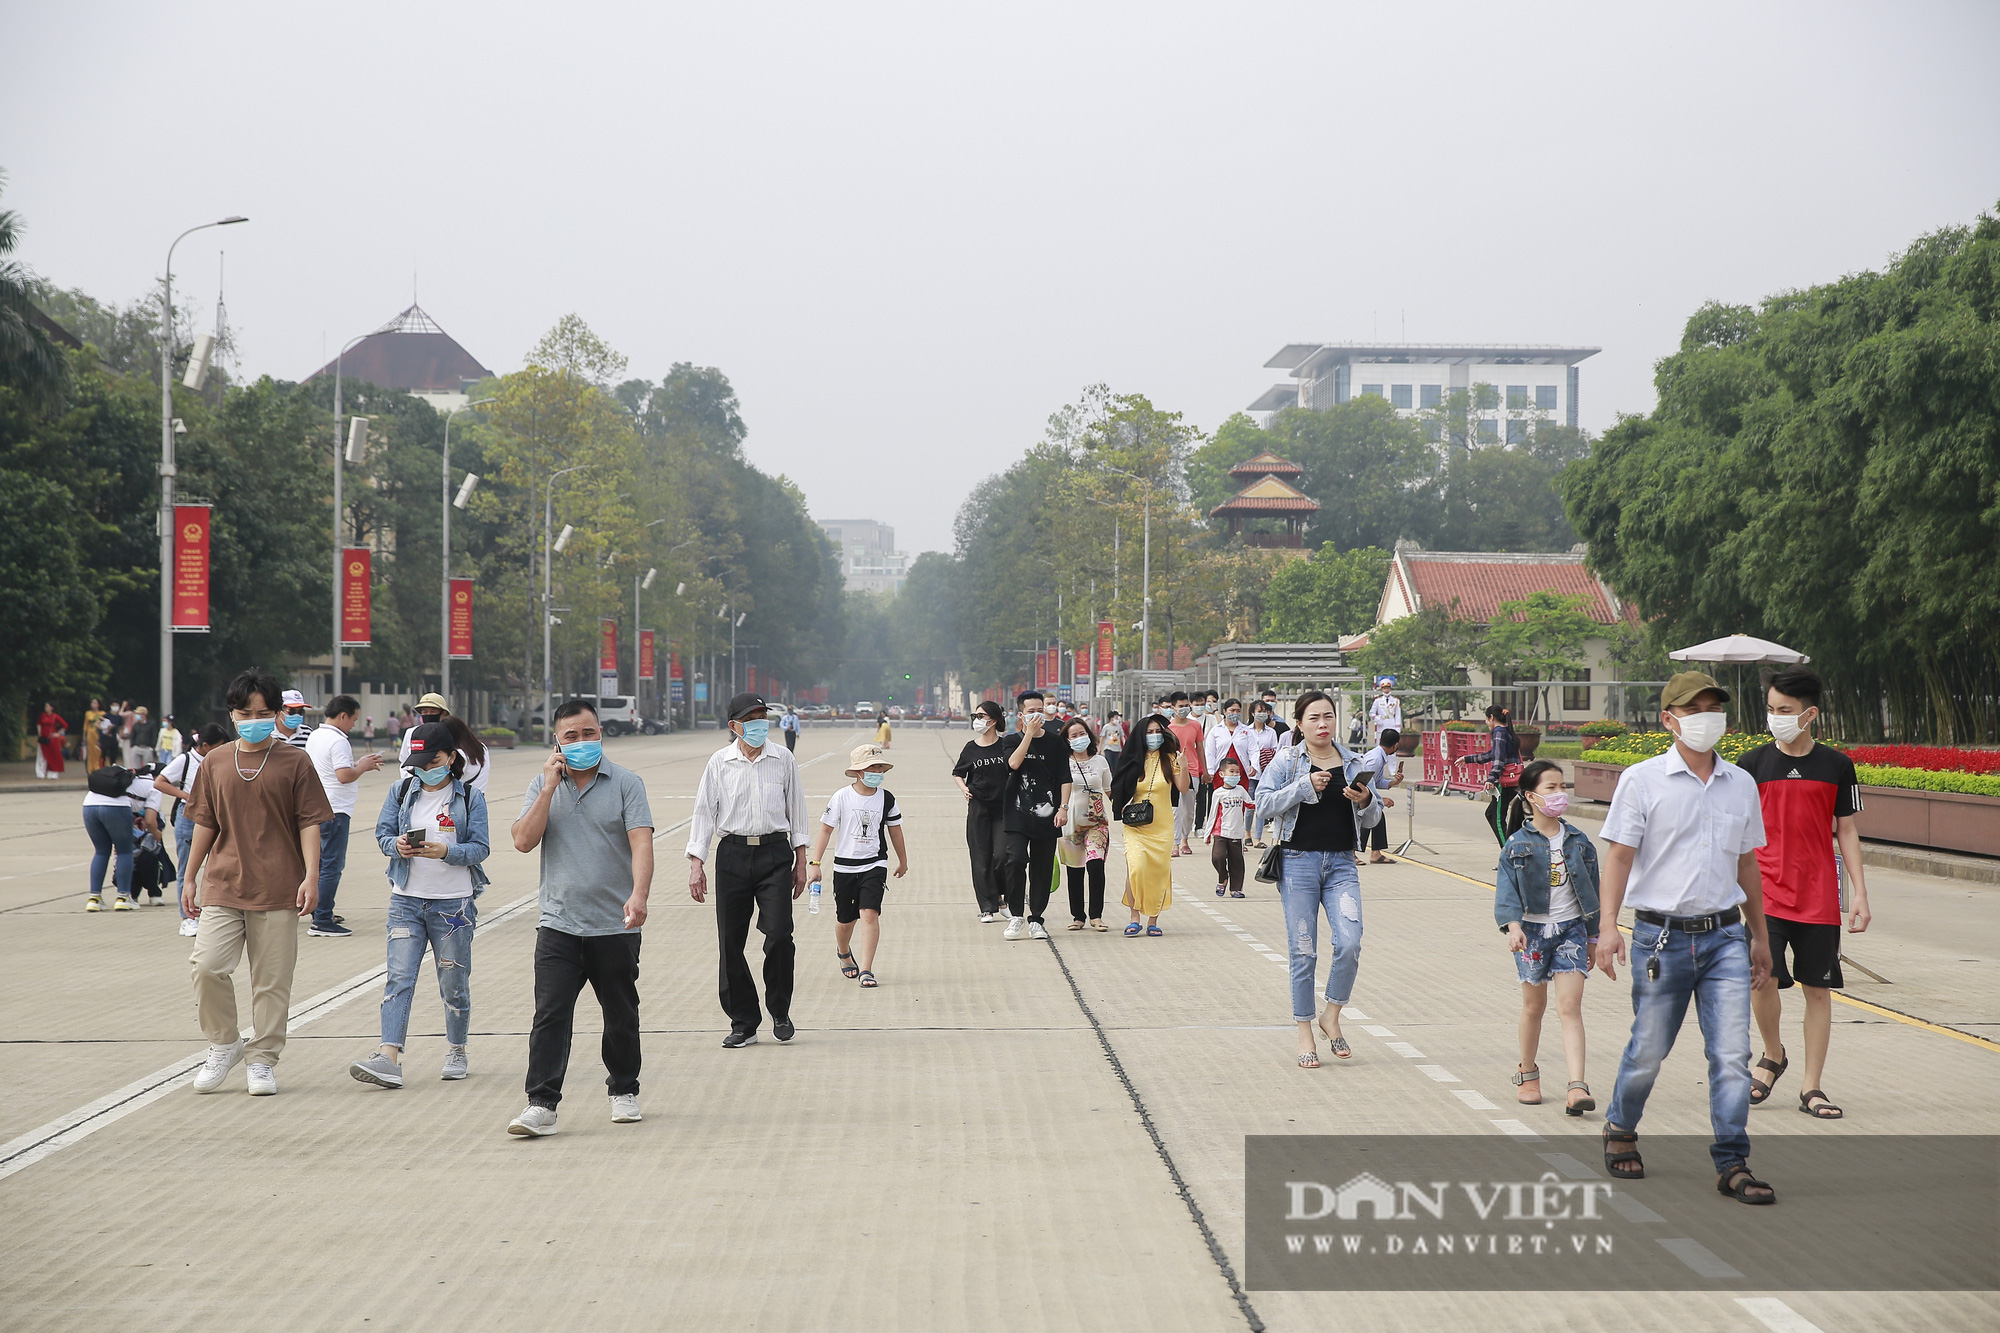 Bất ngờ lượng du khách tham quan lăng Bác, bảo tàng tại Hà Nội trong sáng 30/4 - Ảnh 2.